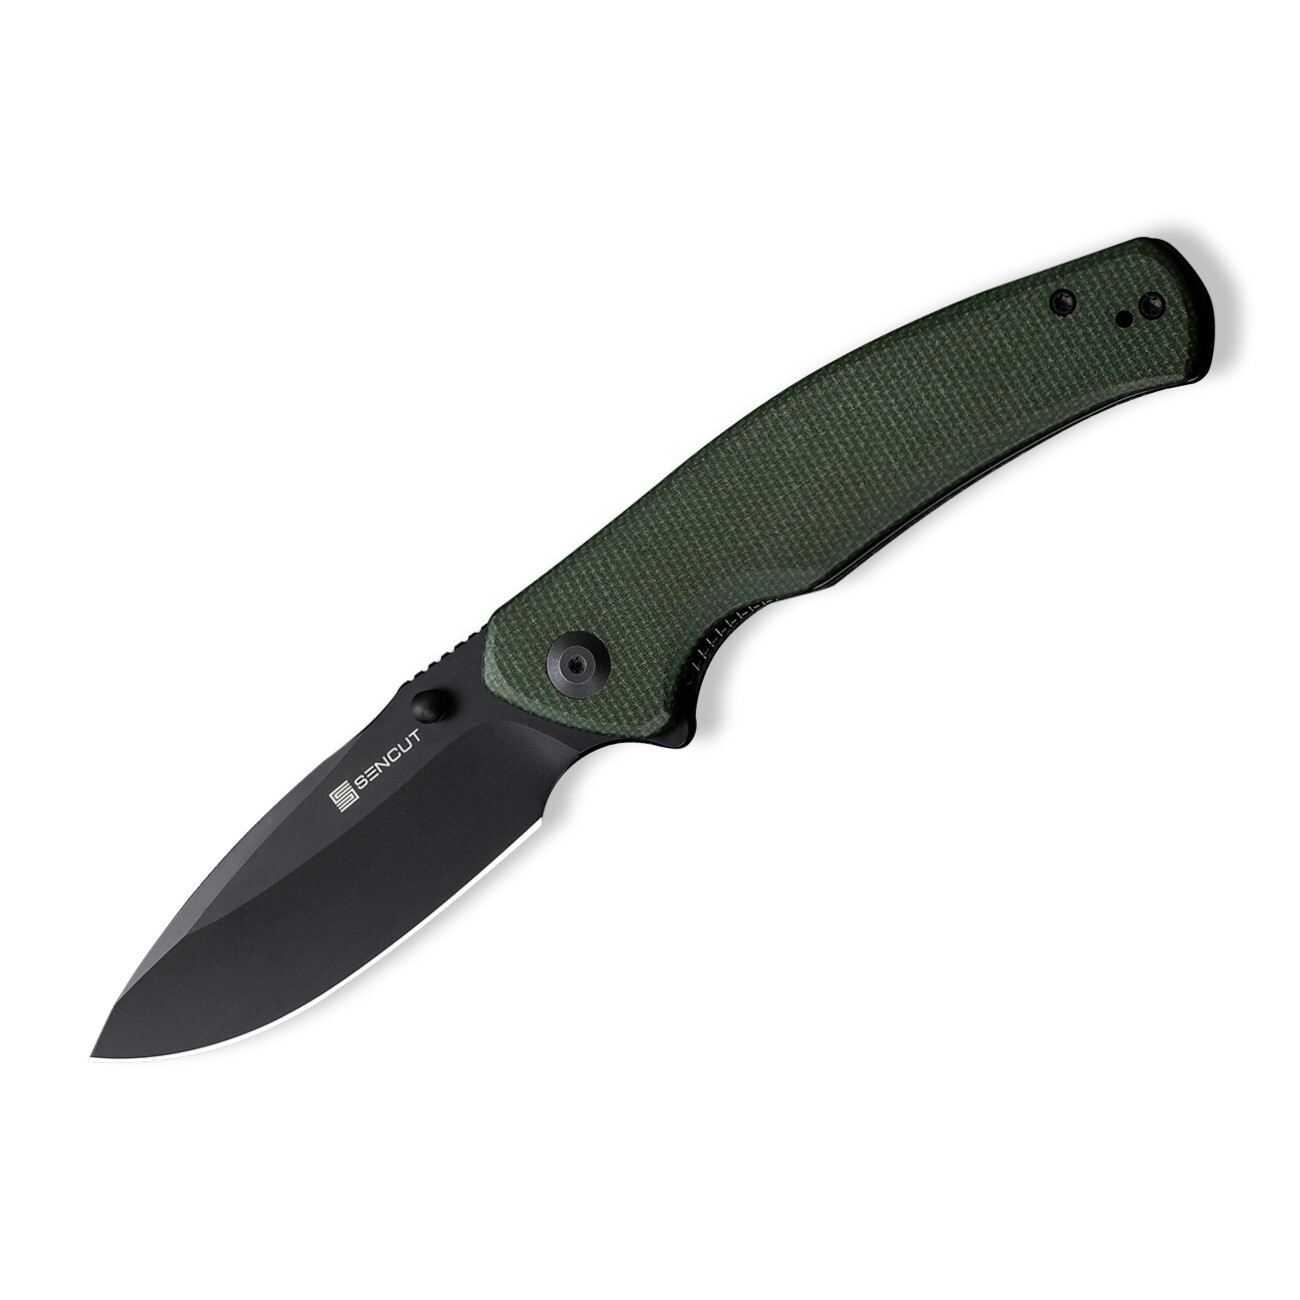 Складной нож Sencut Slashkin, сталь D2, рукоять canvas micarta, black/green складной нож cjrb ria сталь ar rpm9 micarta